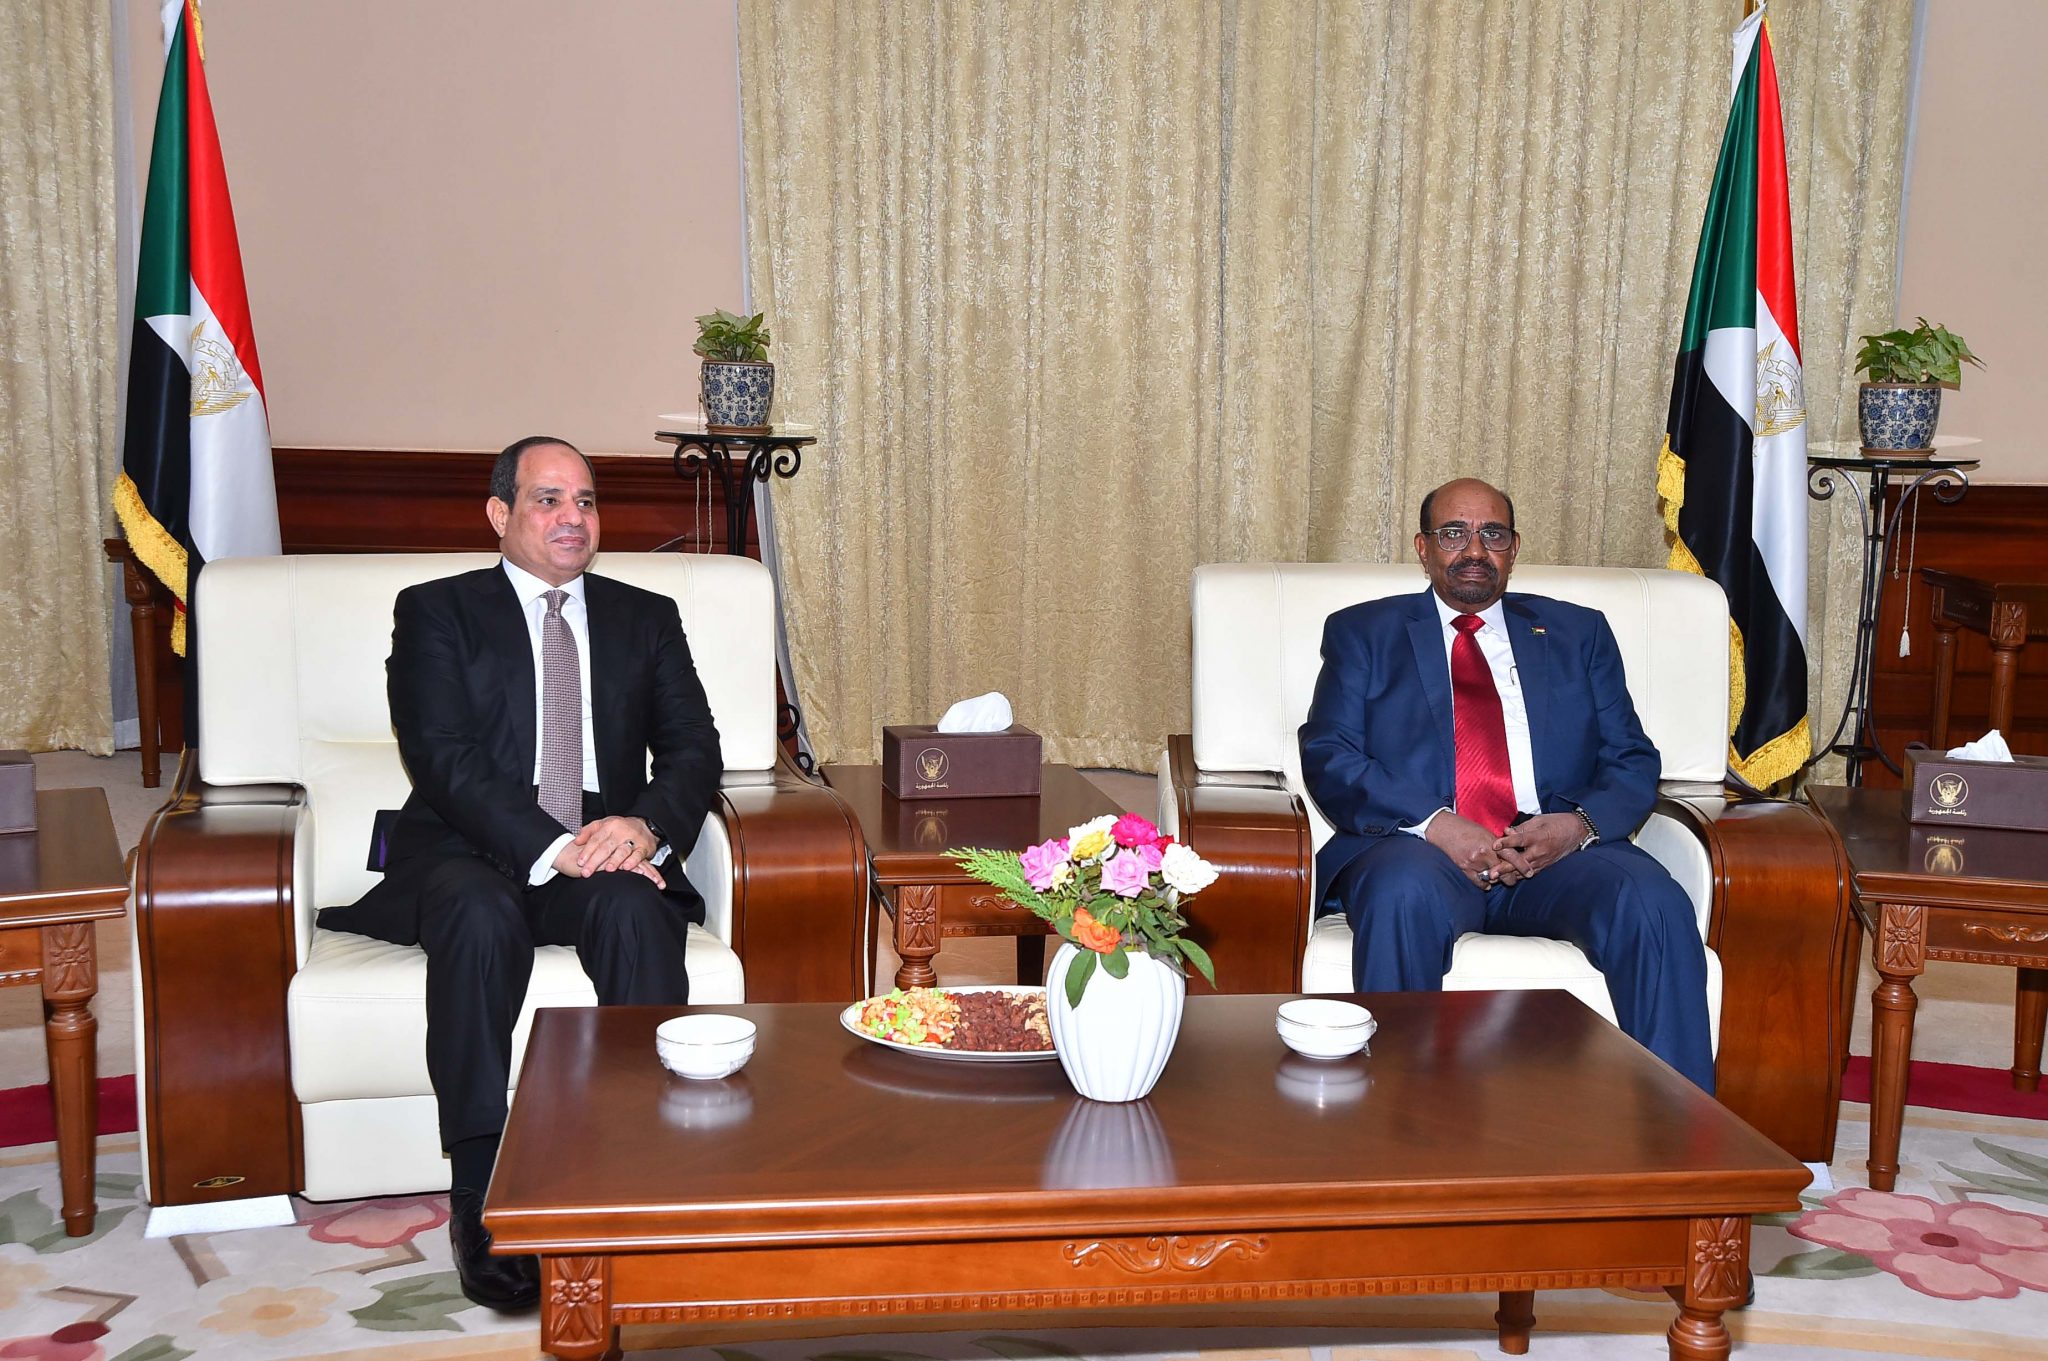   الرئيس يعقد جلسة مباحثات مع الرئيس السوداني عمر البشير